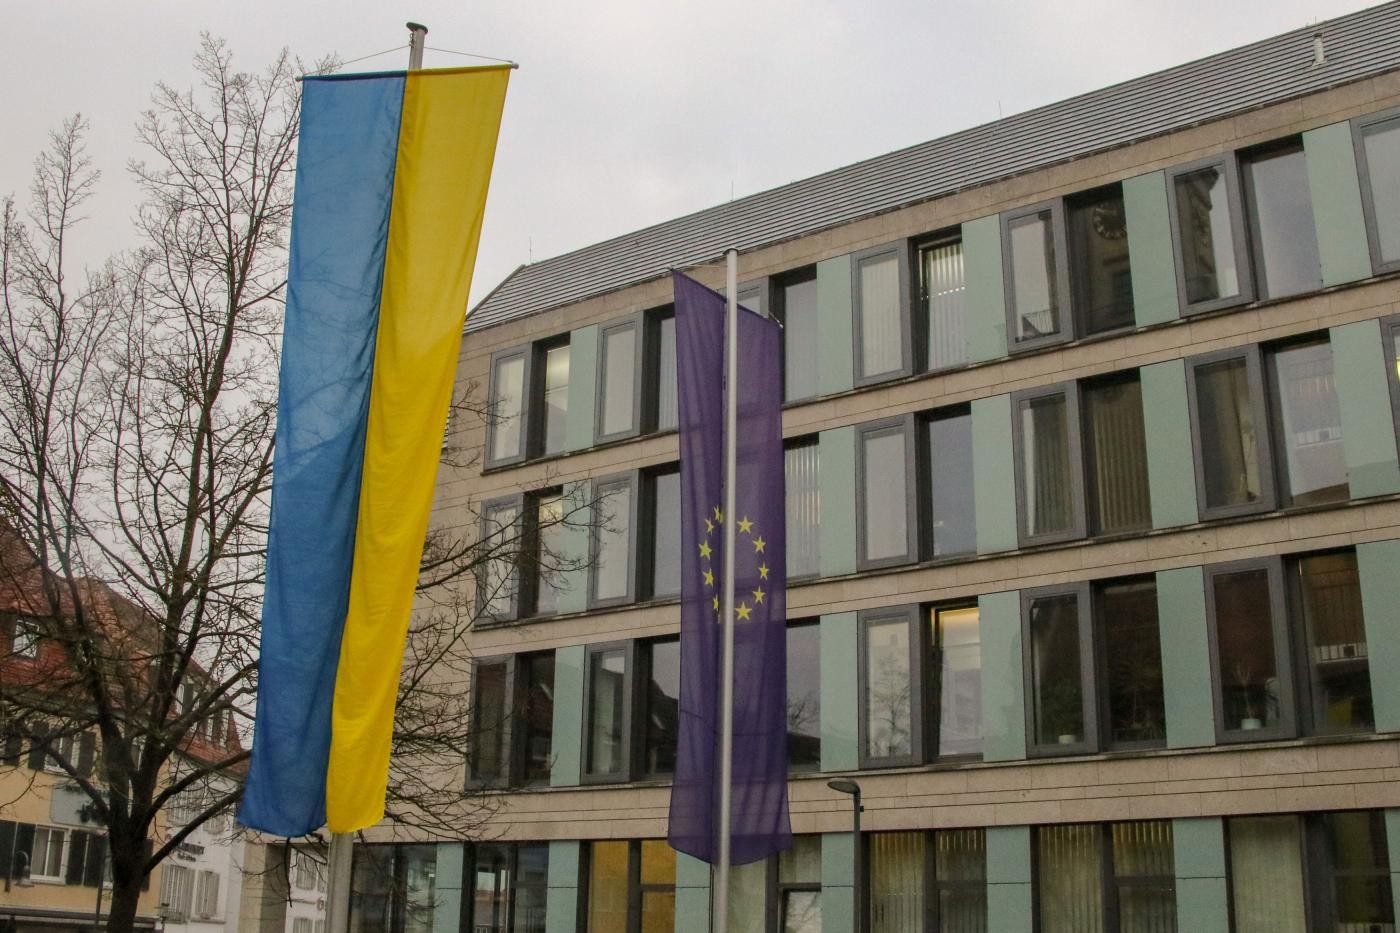 Die blau-gelbe Flagge der Ukraine und die blaue Flagge der EU mit gelbem Sternenkreis.